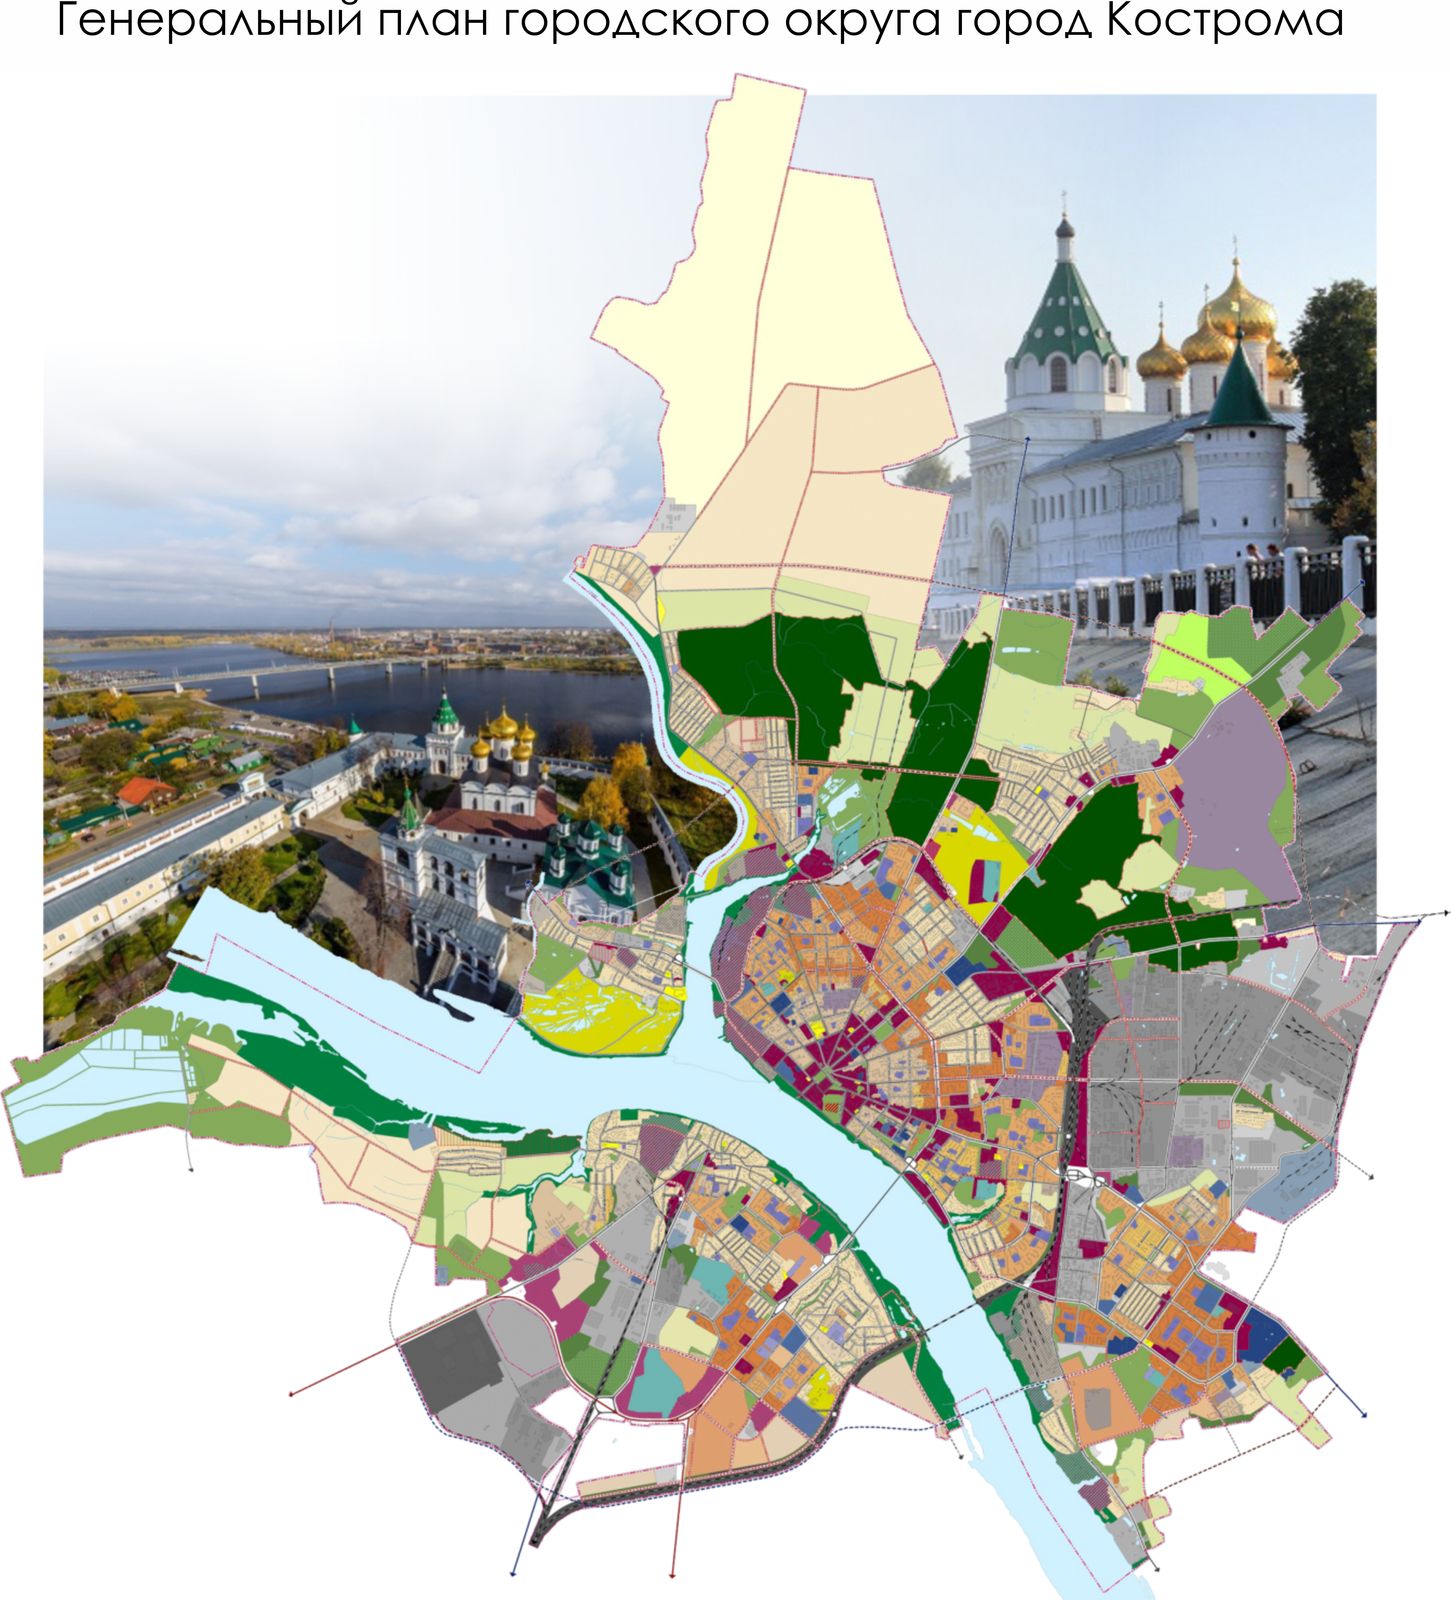 Генеральный план городского округа город Кострома